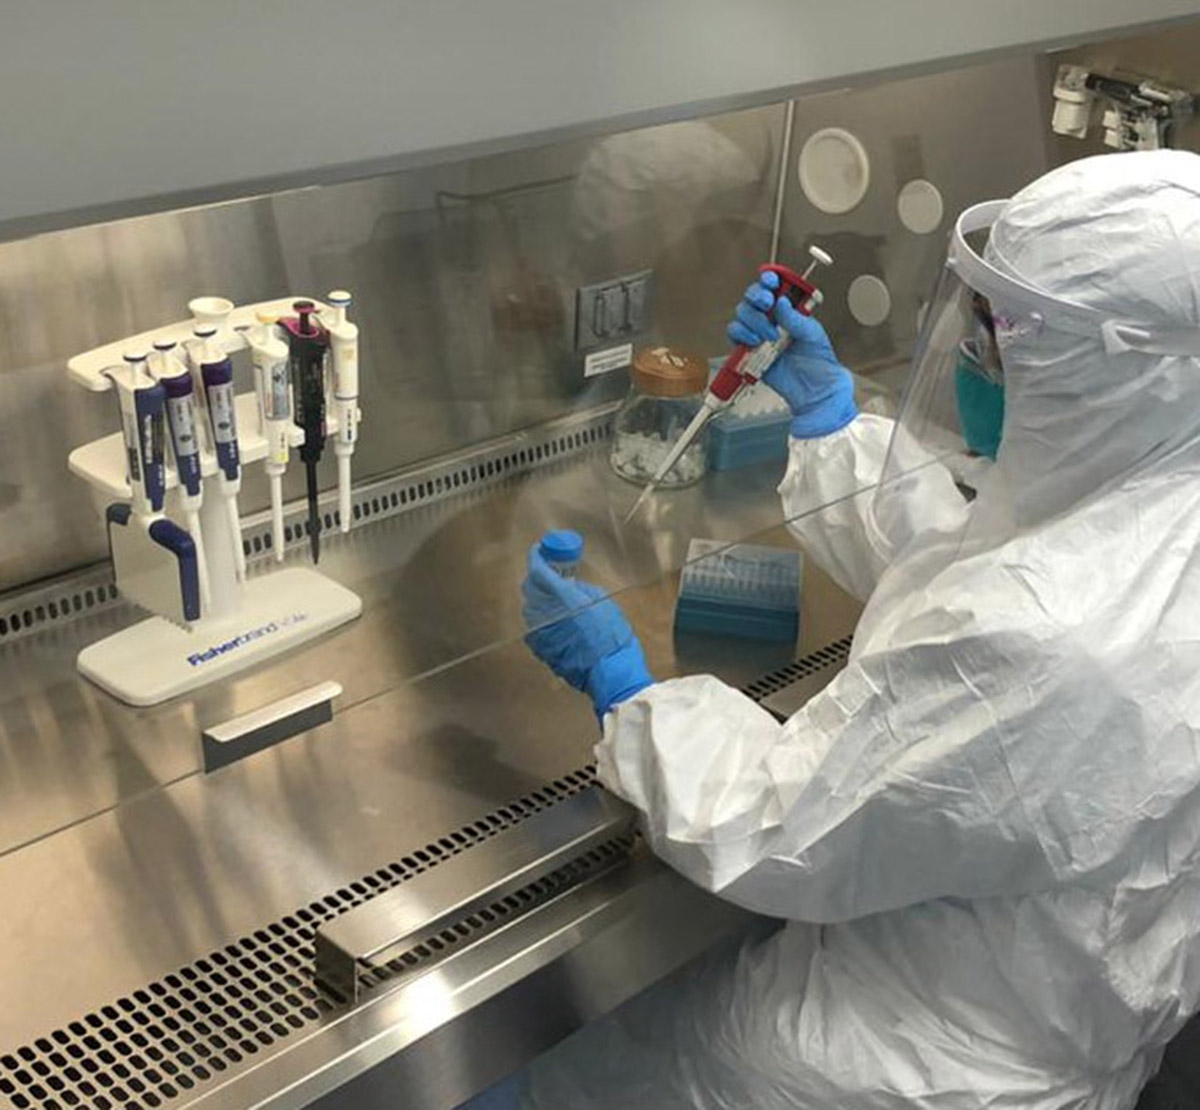 Los recursos donados por ISA se utilizarán para compra de reactivos de pruebas de detección de COVID-19. Foto: cortesía Alejandra Orozco.